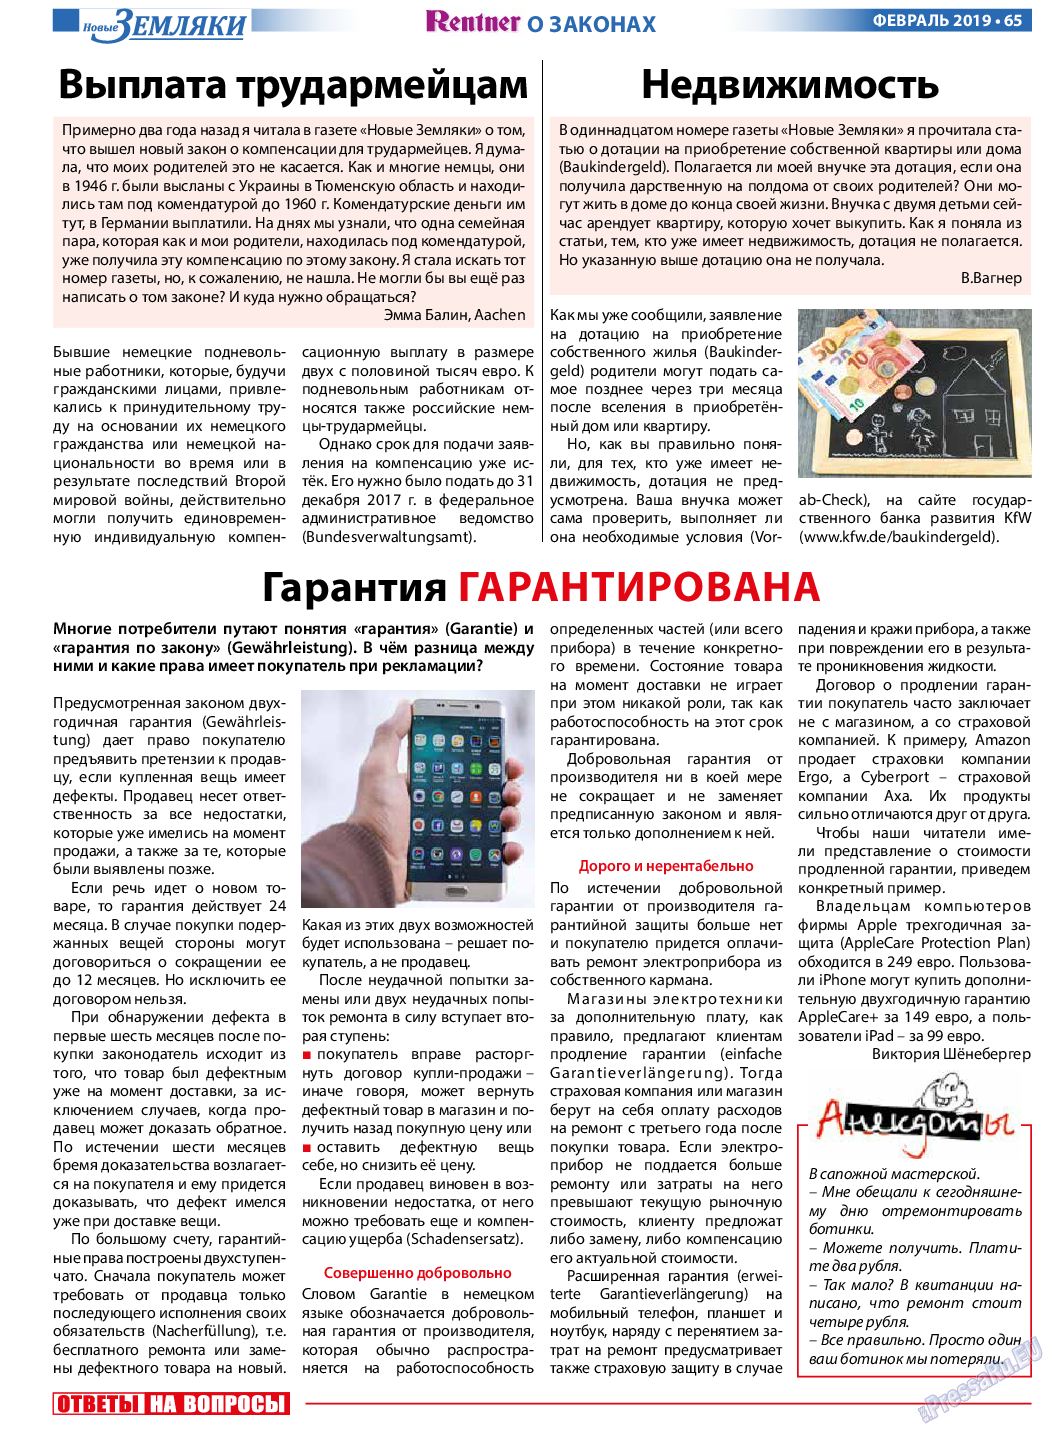 Новые Земляки (газета). 2019 год, номер 2, стр. 65